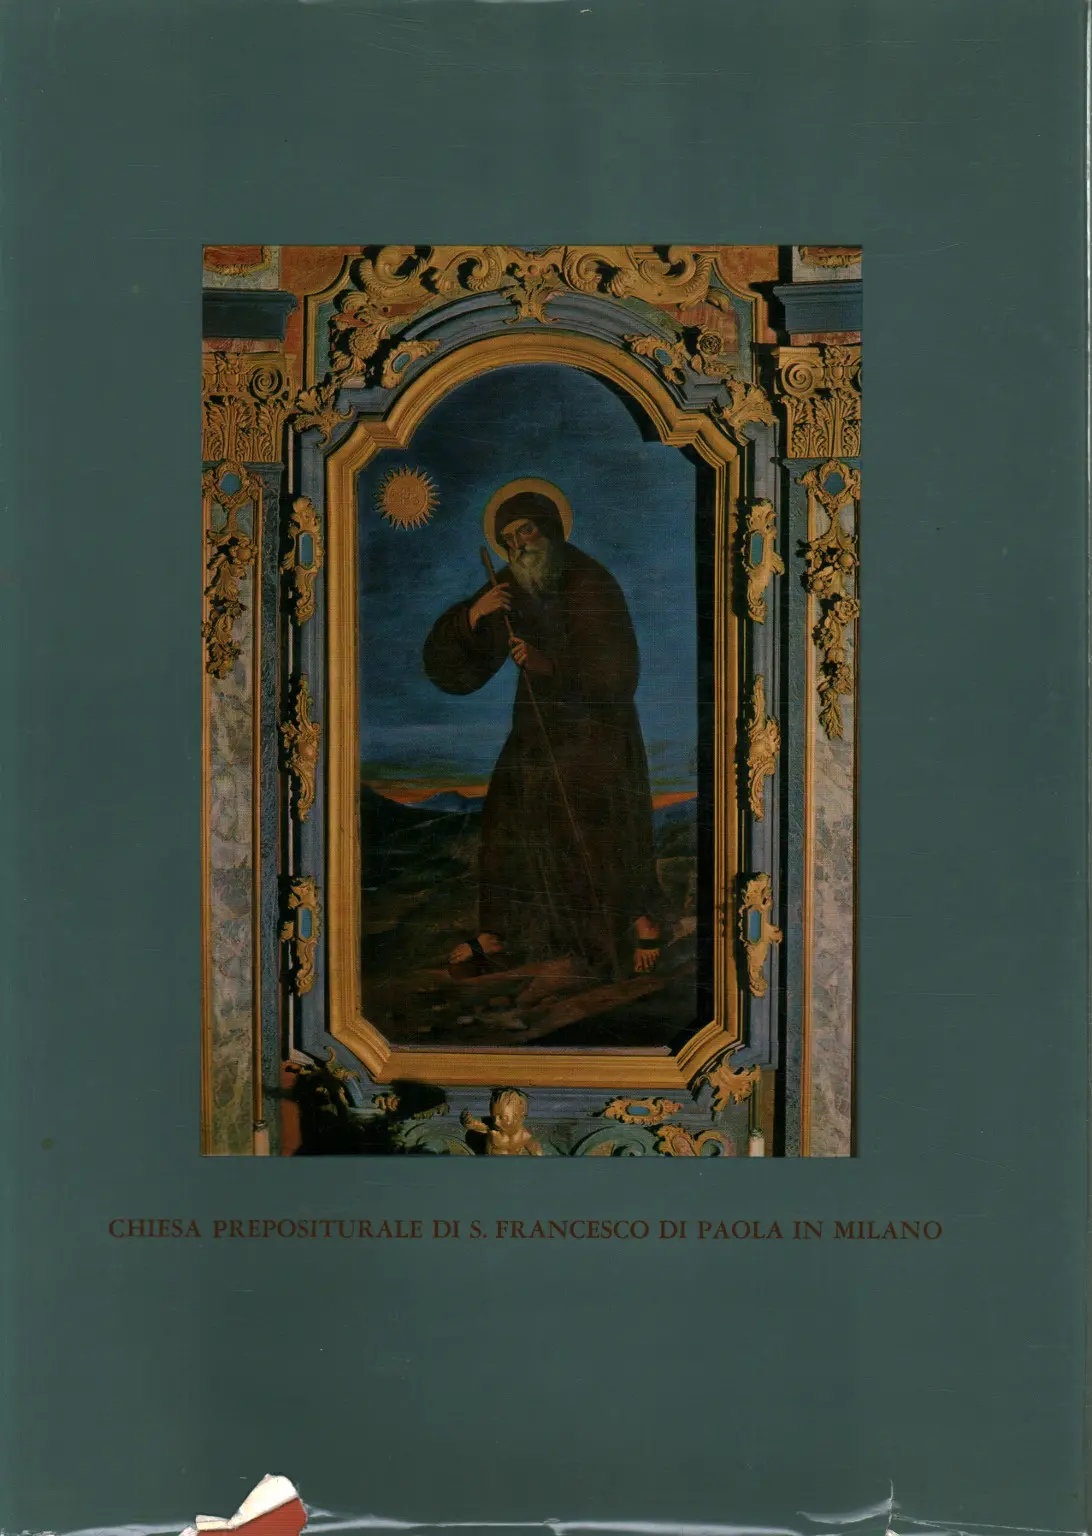 Anastasia Milano Francesco di Paola in S La parrocchia preposturale di S 